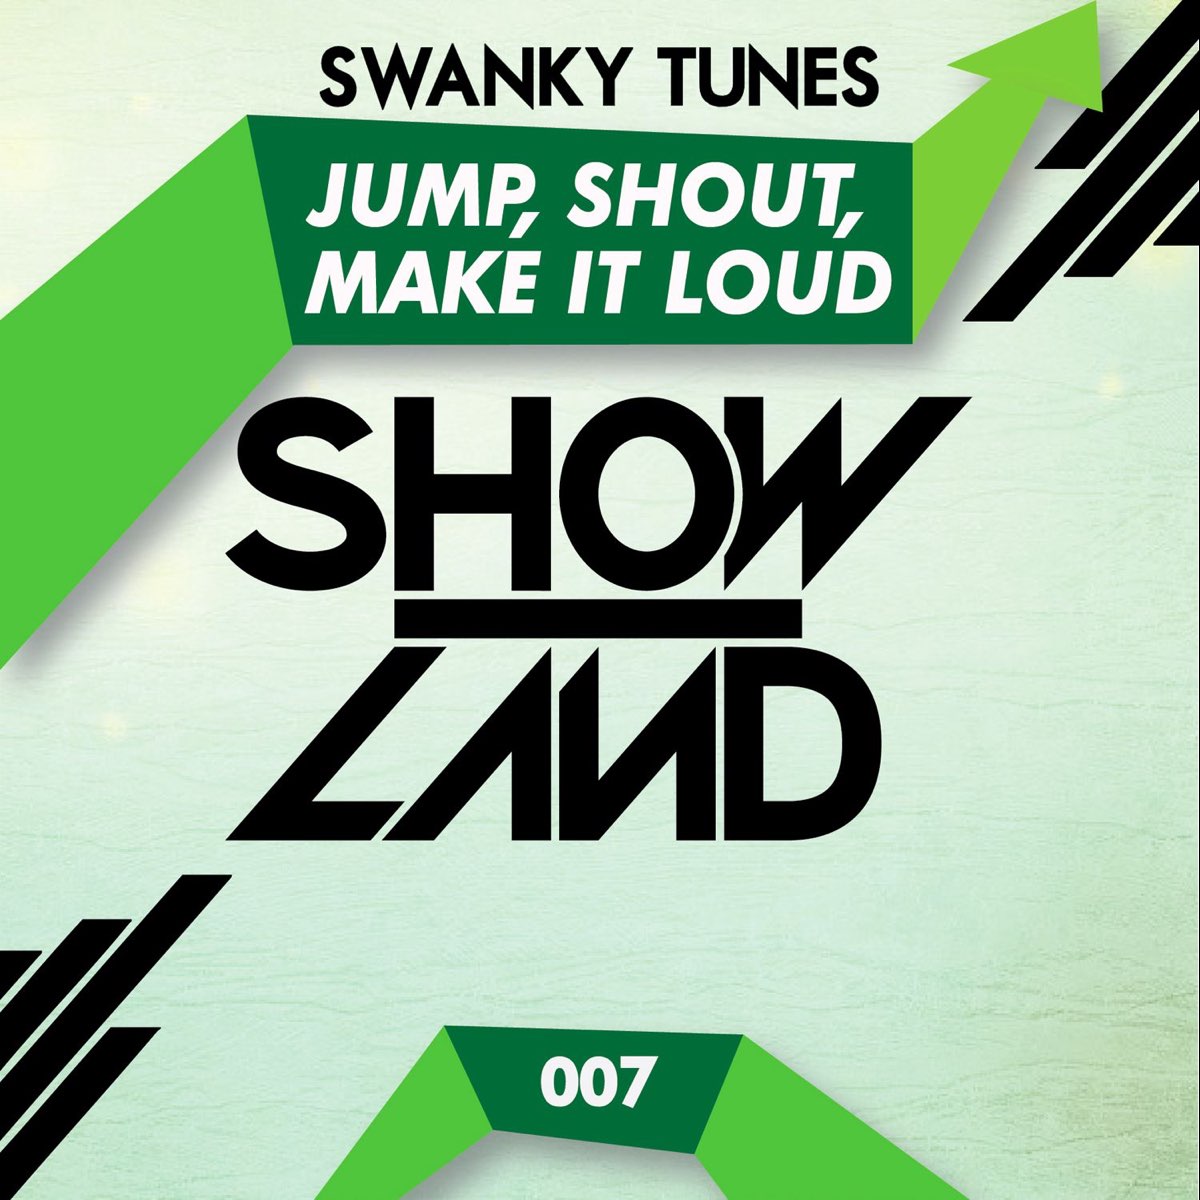 Swanky tunes remix. Swanky Tunes. Swanky Tunes с концерта. Swanky Tunes big Love to the Bass. Swanky Tunes и Ассия.